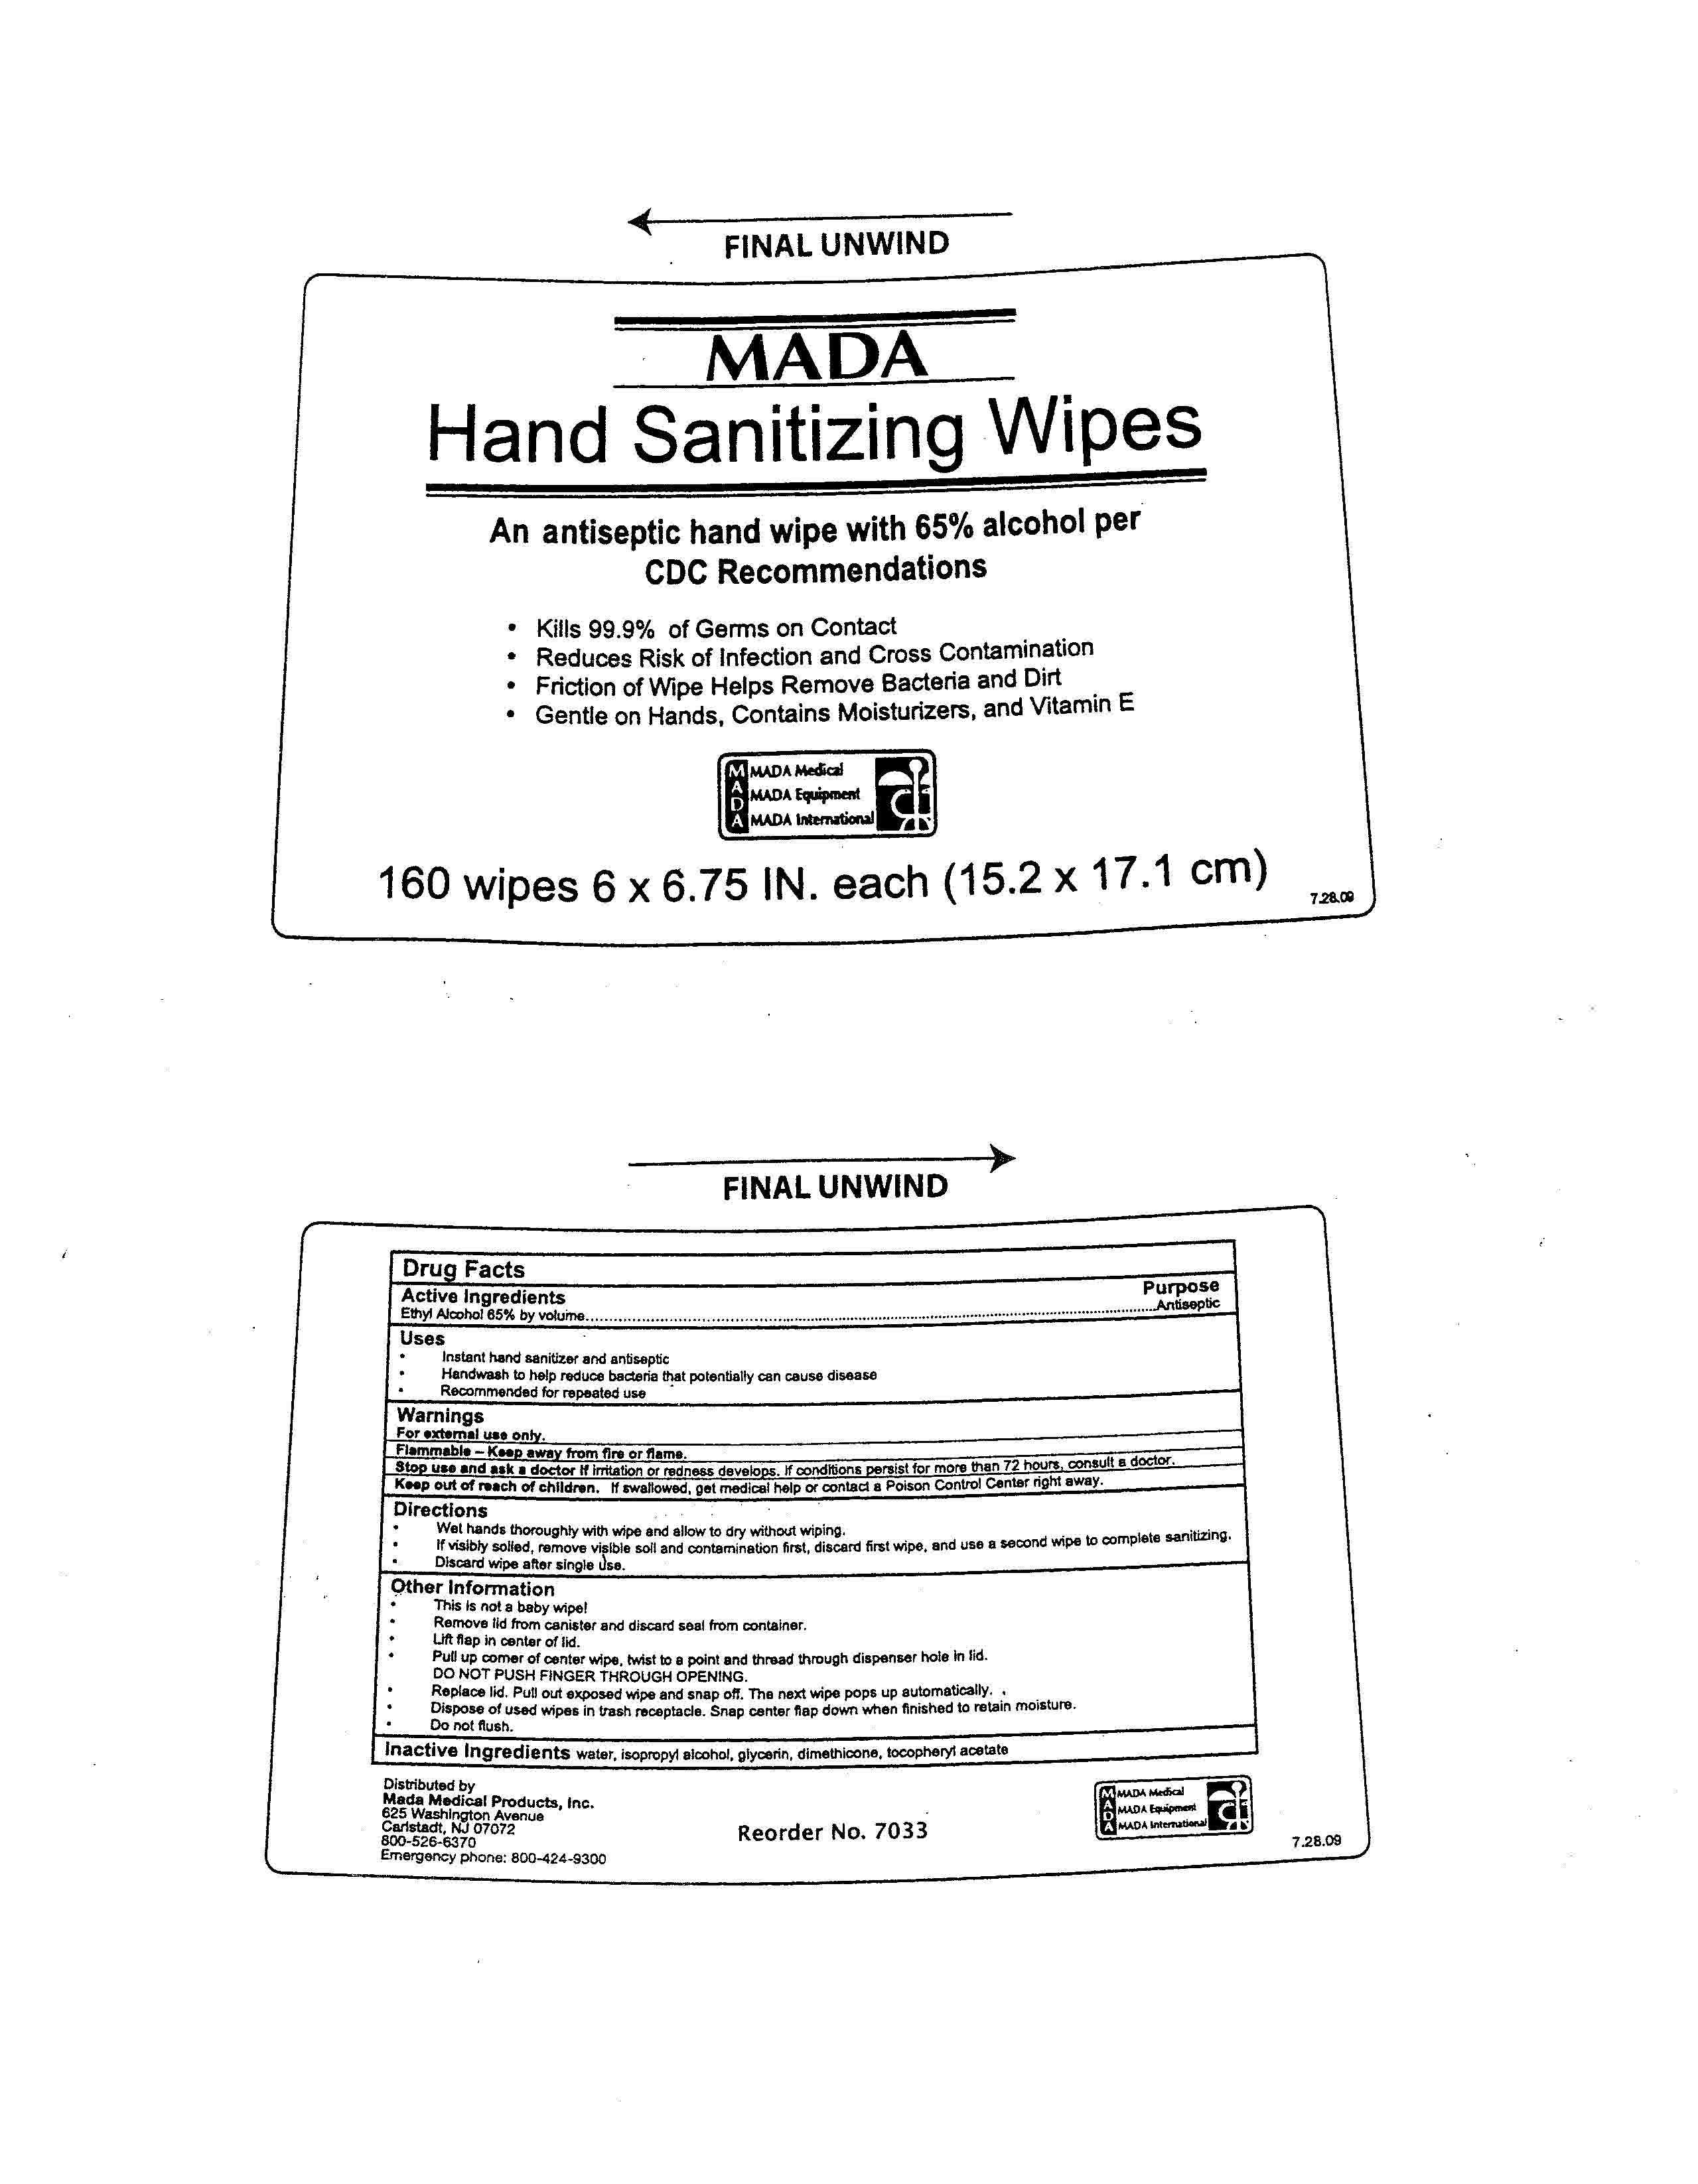 MADA Hand Sanitizing Wipes